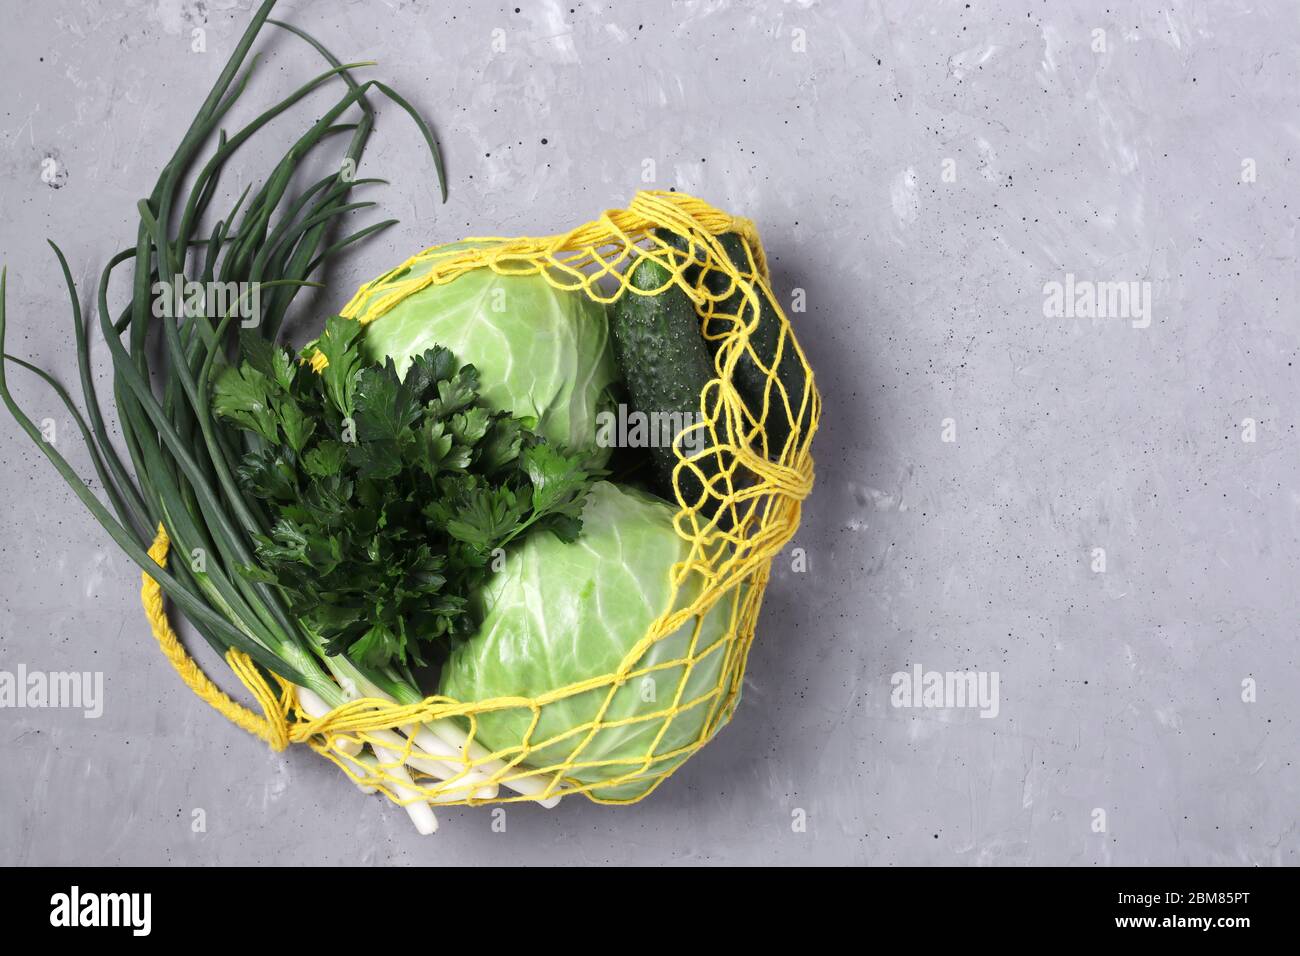 Sacco riutilizzabile a stringa in rete gialla con verdure verdi su fondo grigio in cemento. Concetto senza plastica, vista dall'alto, spazio di copia Foto Stock